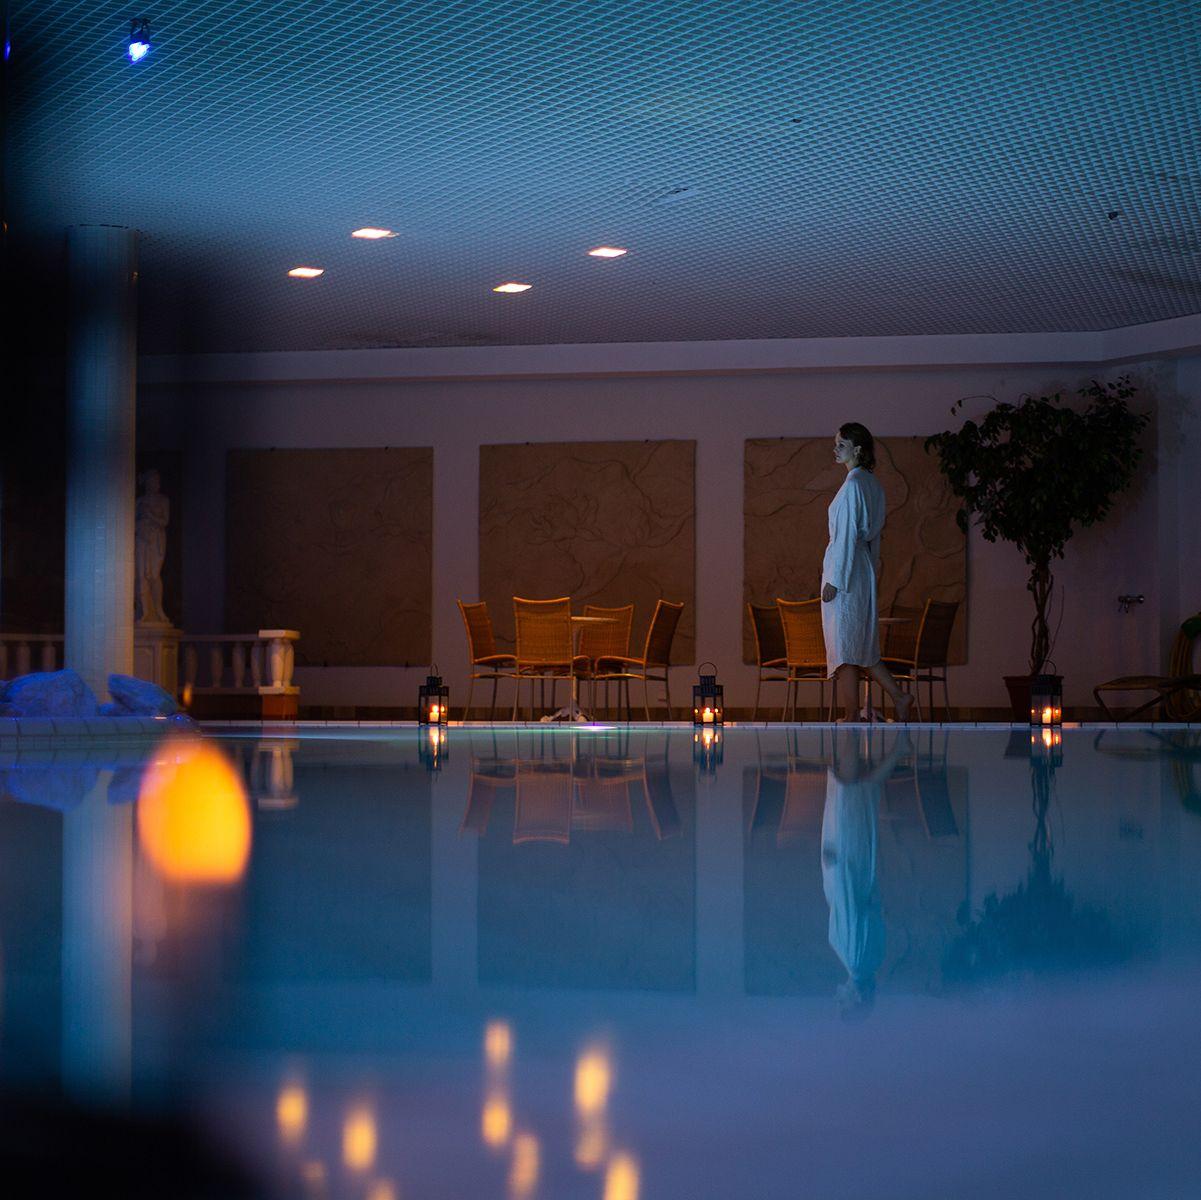 Asiakas kävelee lyhdyin valaistun altaan vieressä valkoinen kylpytakki päällään Naantalin kylpylässä.